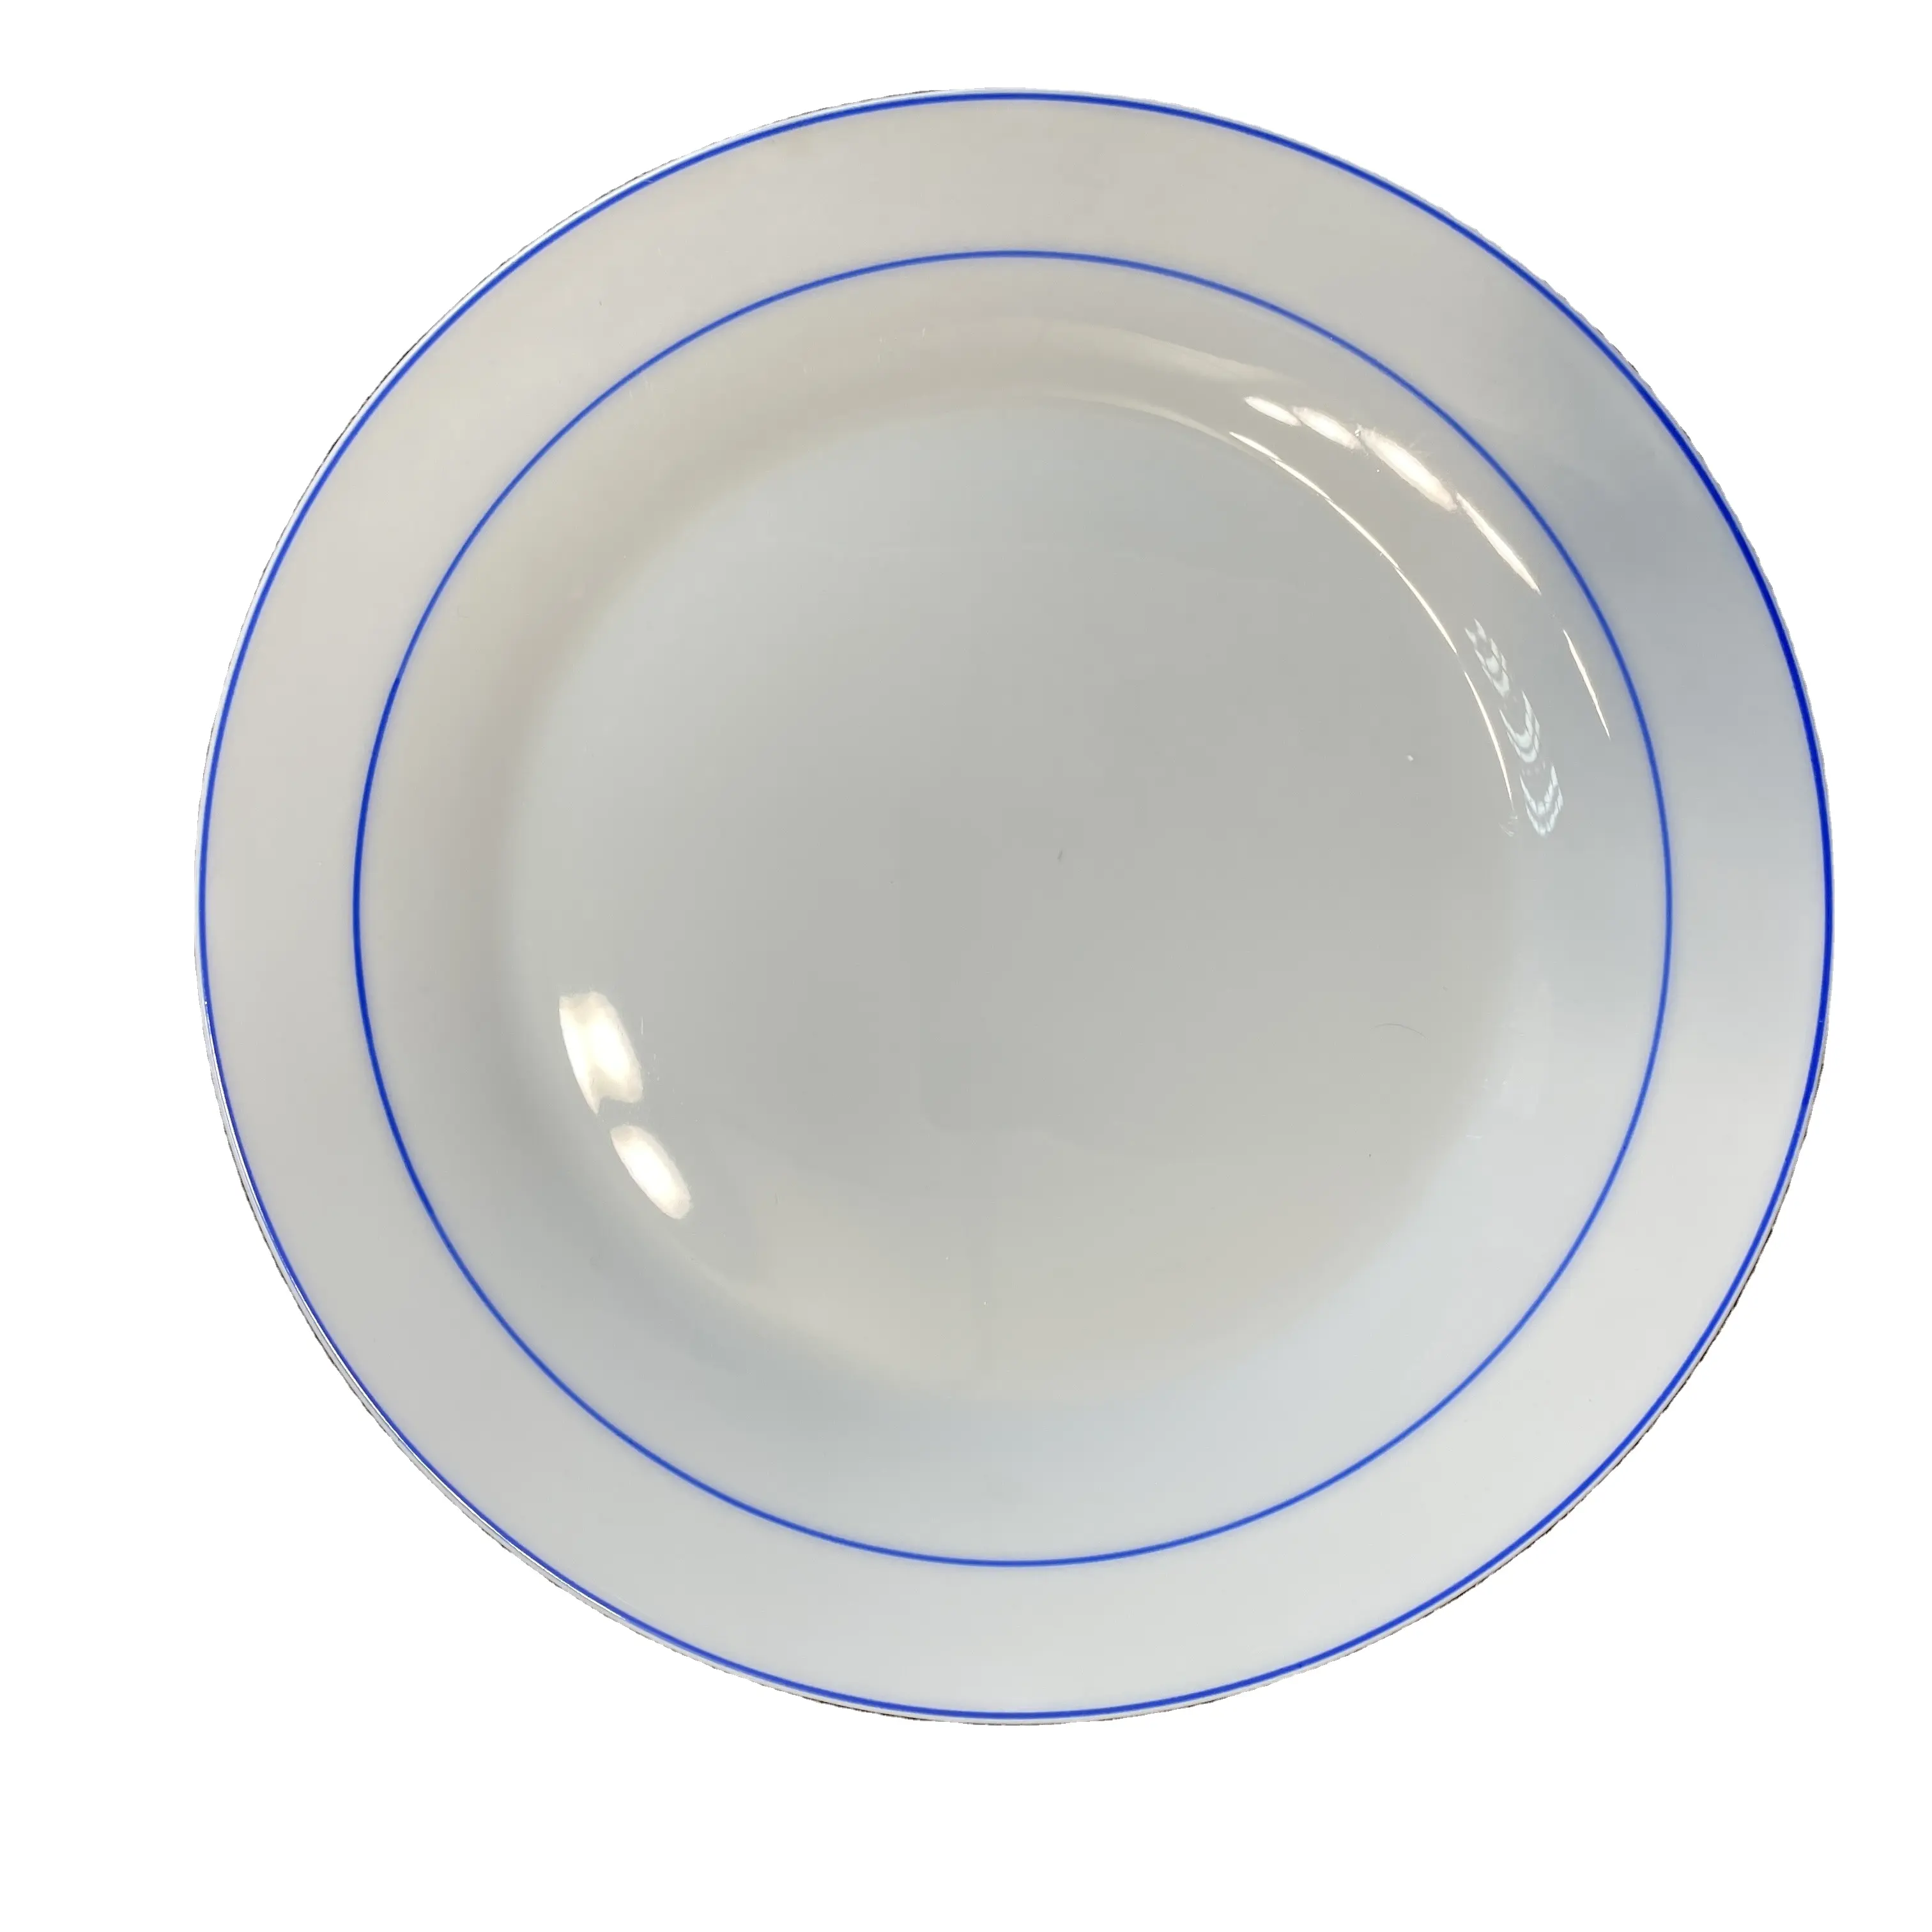 Benutzer definierte 10,5 Zoll Luxus Sublimation Blank Wärme übertragung Porzellan teller Nordic Plates Dish Keramik platte Geschirr